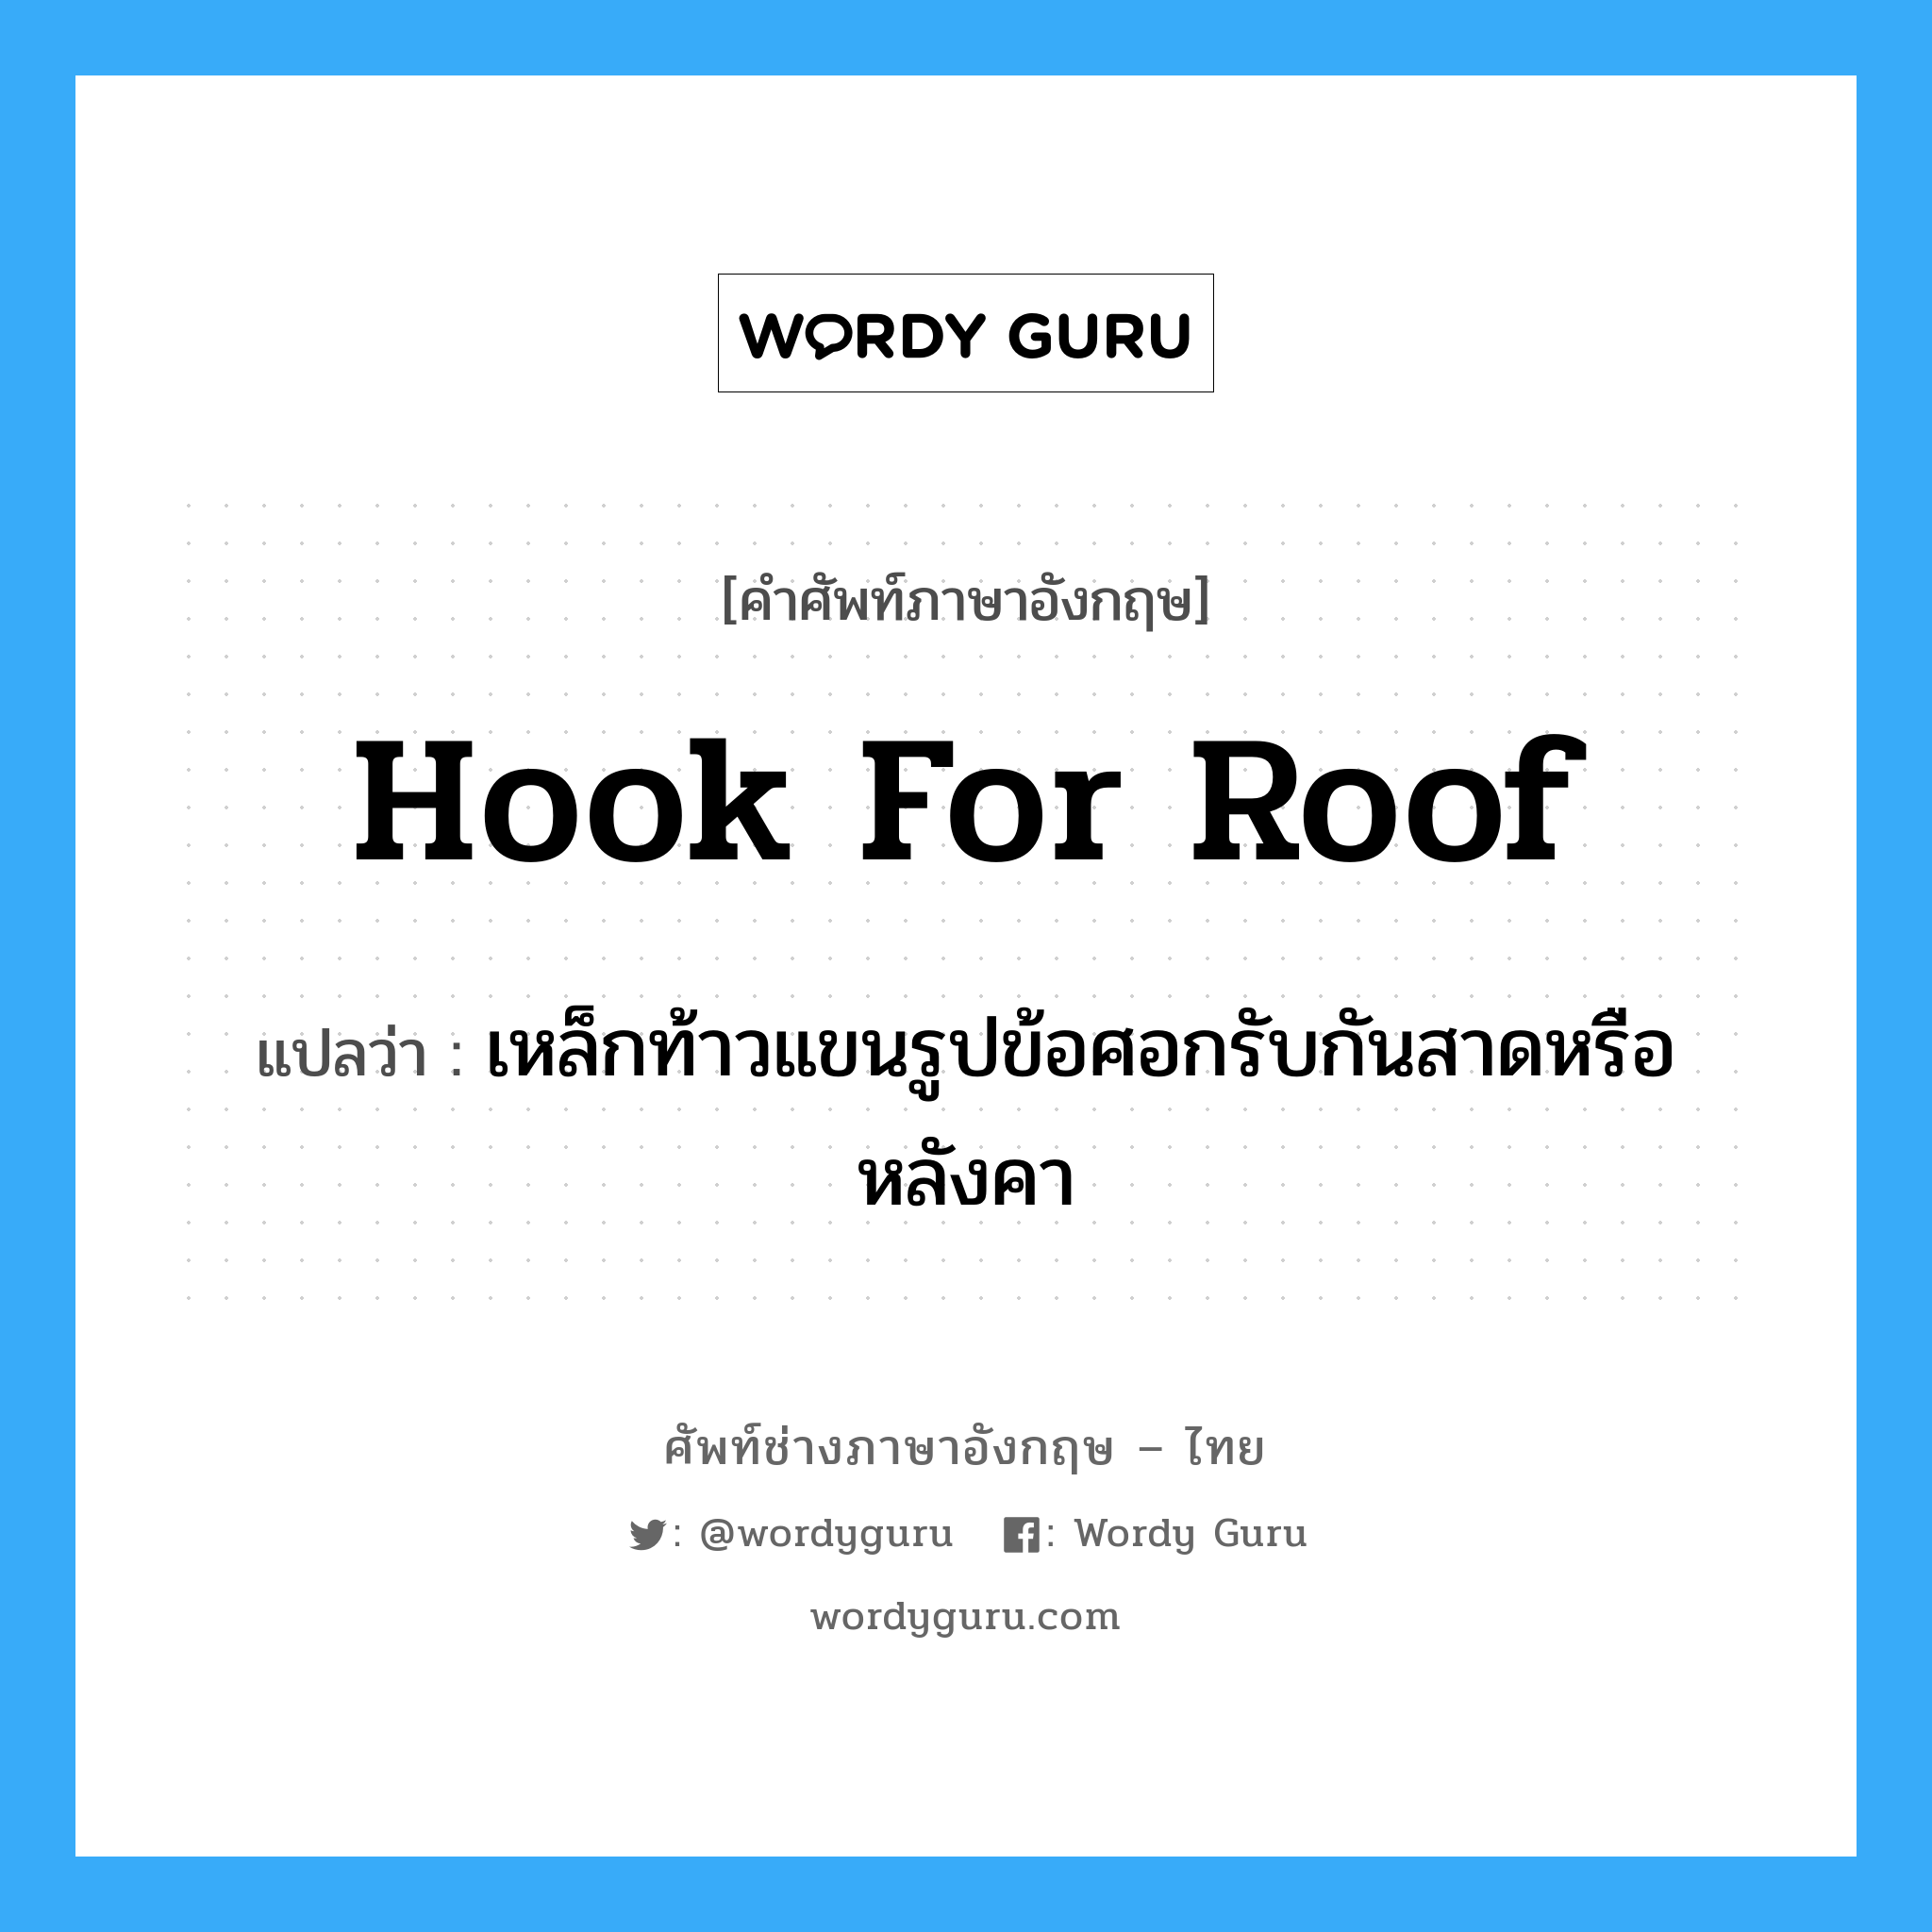 hook for roof แปลว่า?, คำศัพท์ช่างภาษาอังกฤษ - ไทย hook for roof คำศัพท์ภาษาอังกฤษ hook for roof แปลว่า เหล็กท้าวแขนรูปข้อศอกรับกันสาดหรือหลังคา